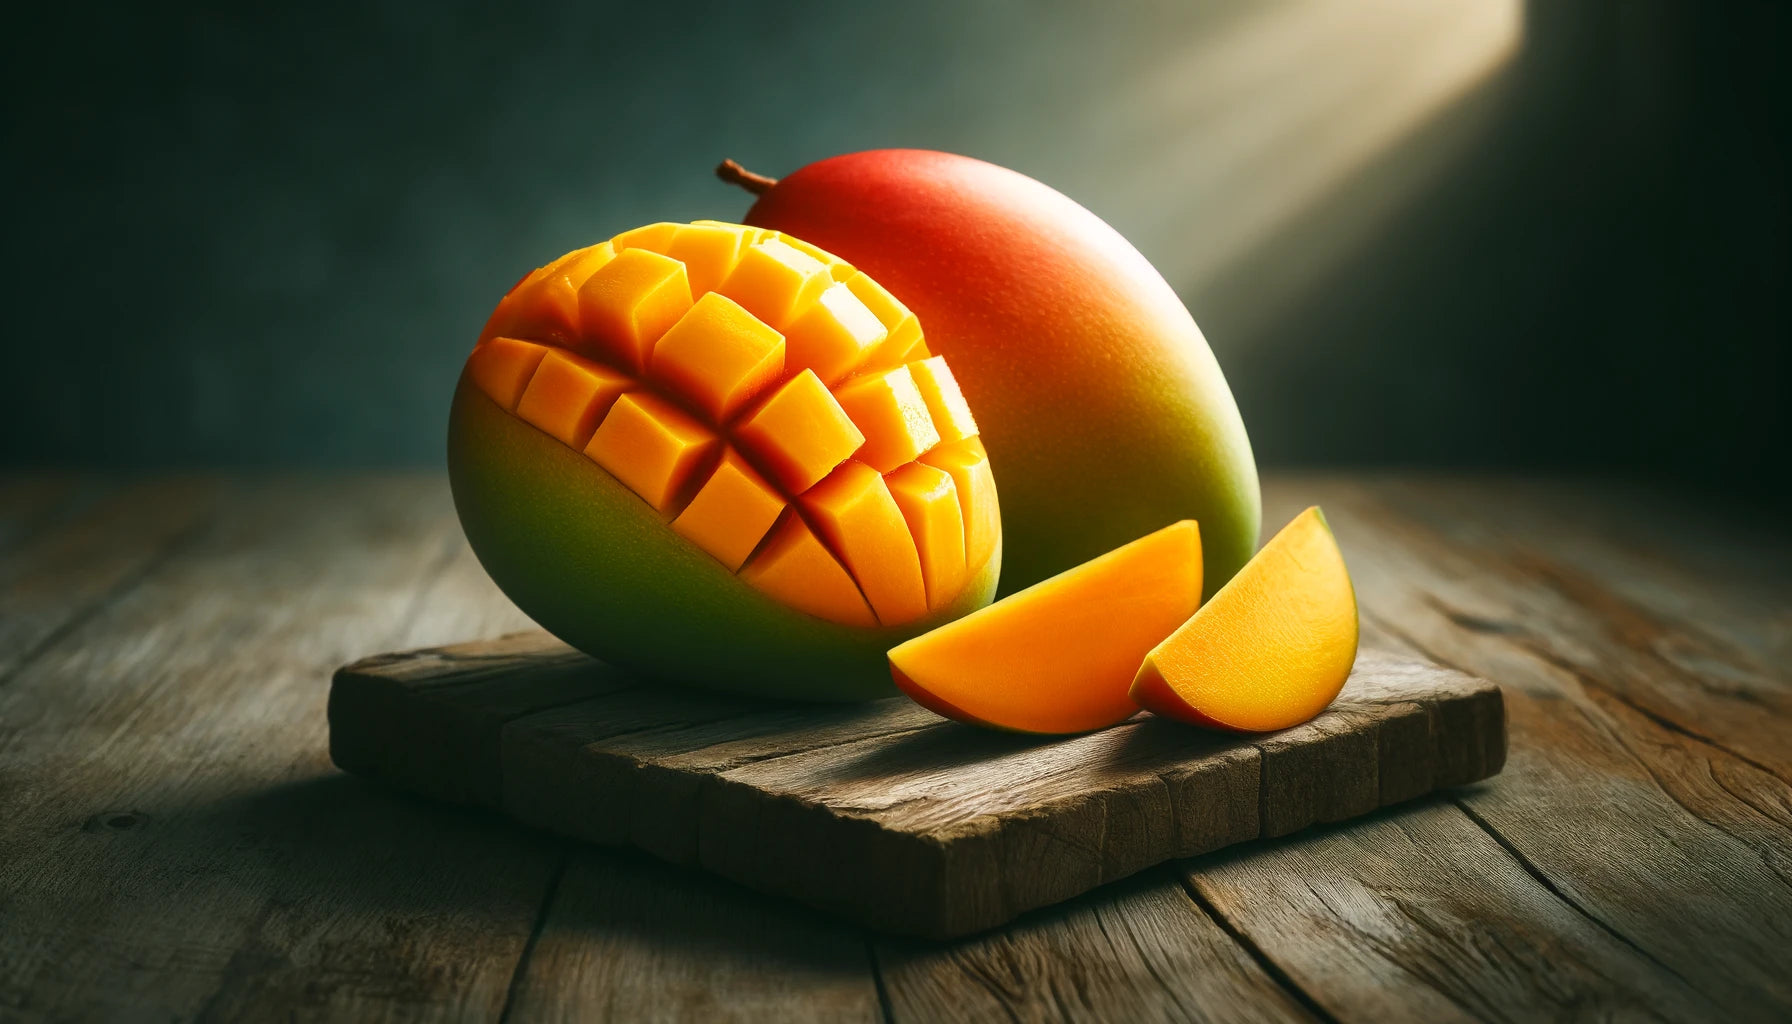 How to Cut a Mango Like a Pro